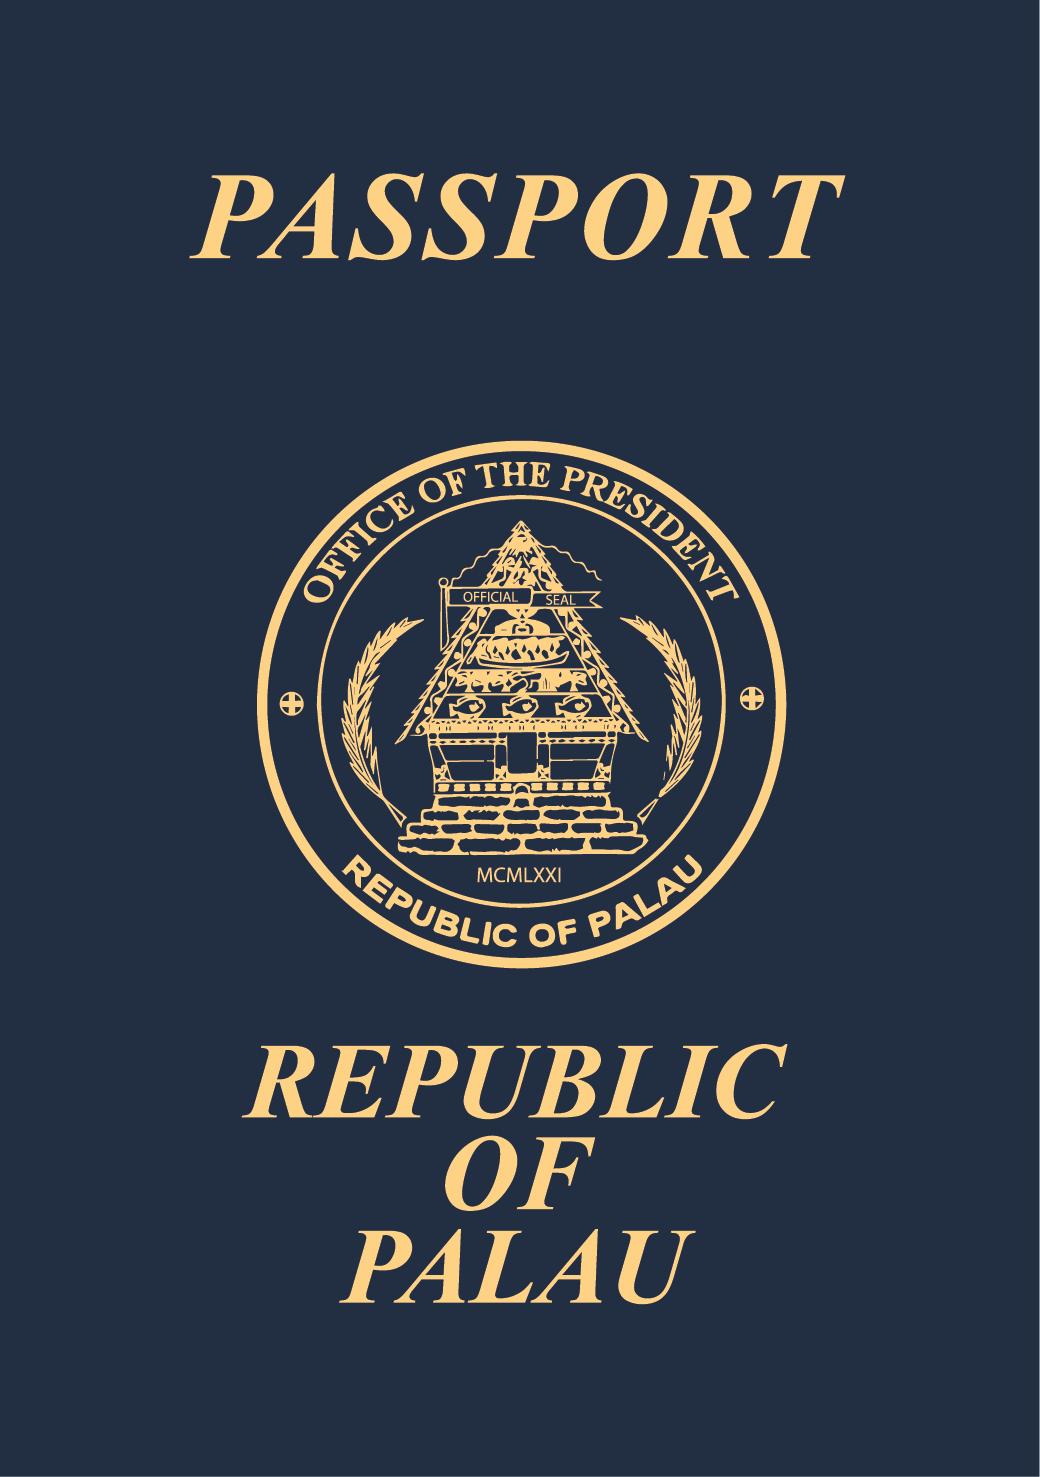 Paspor Palau